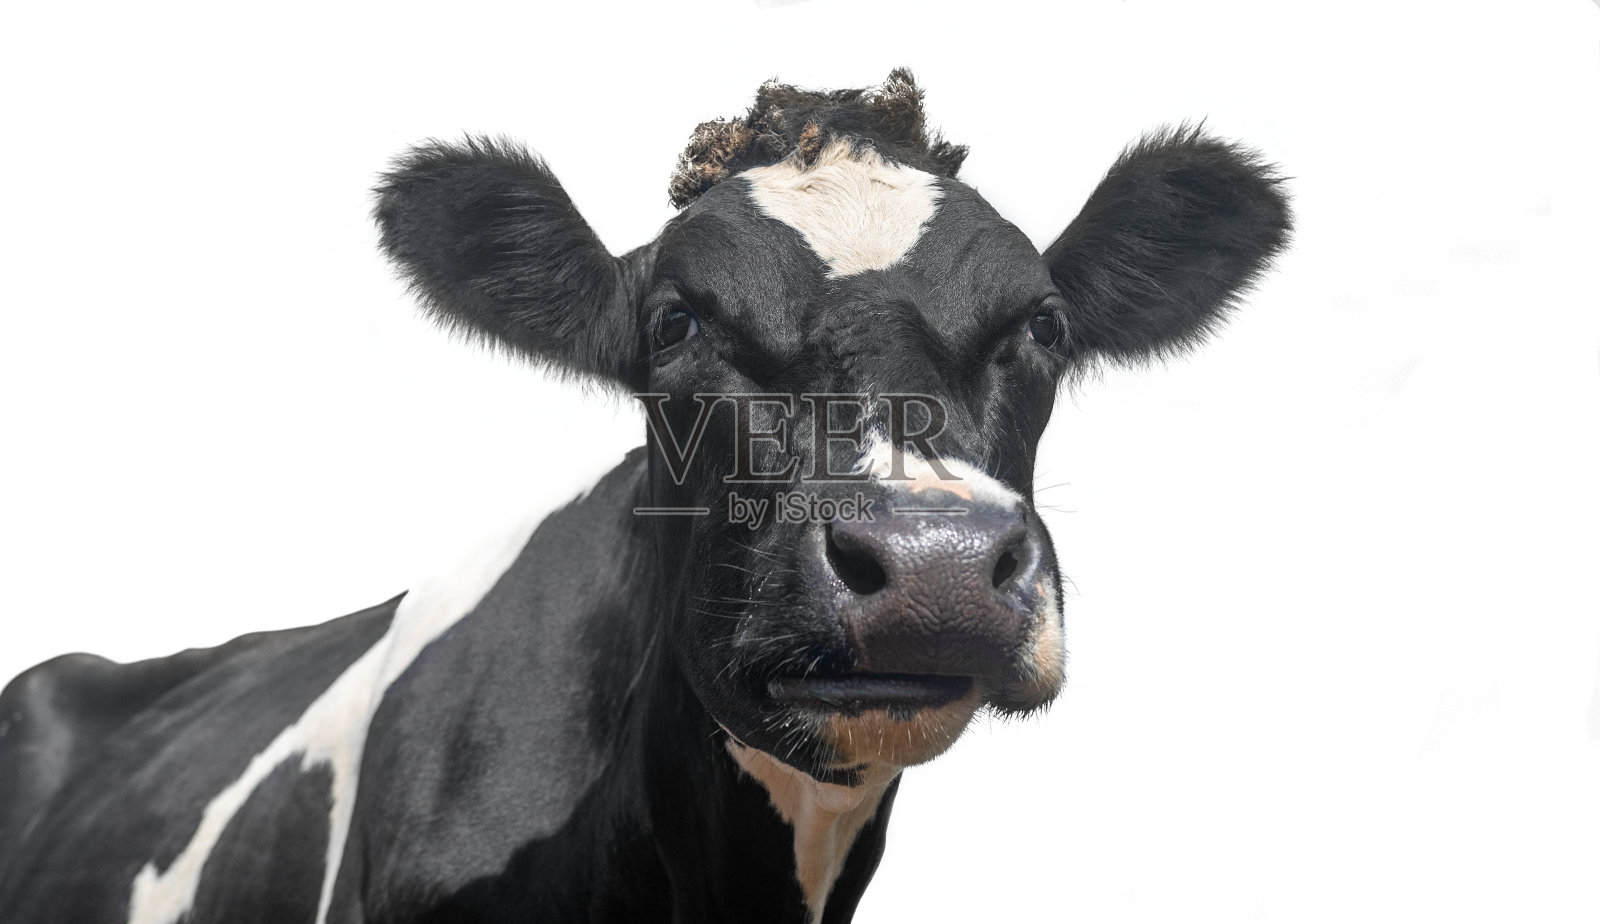 一张黑白相间的奶牛肖像照片摄影图片